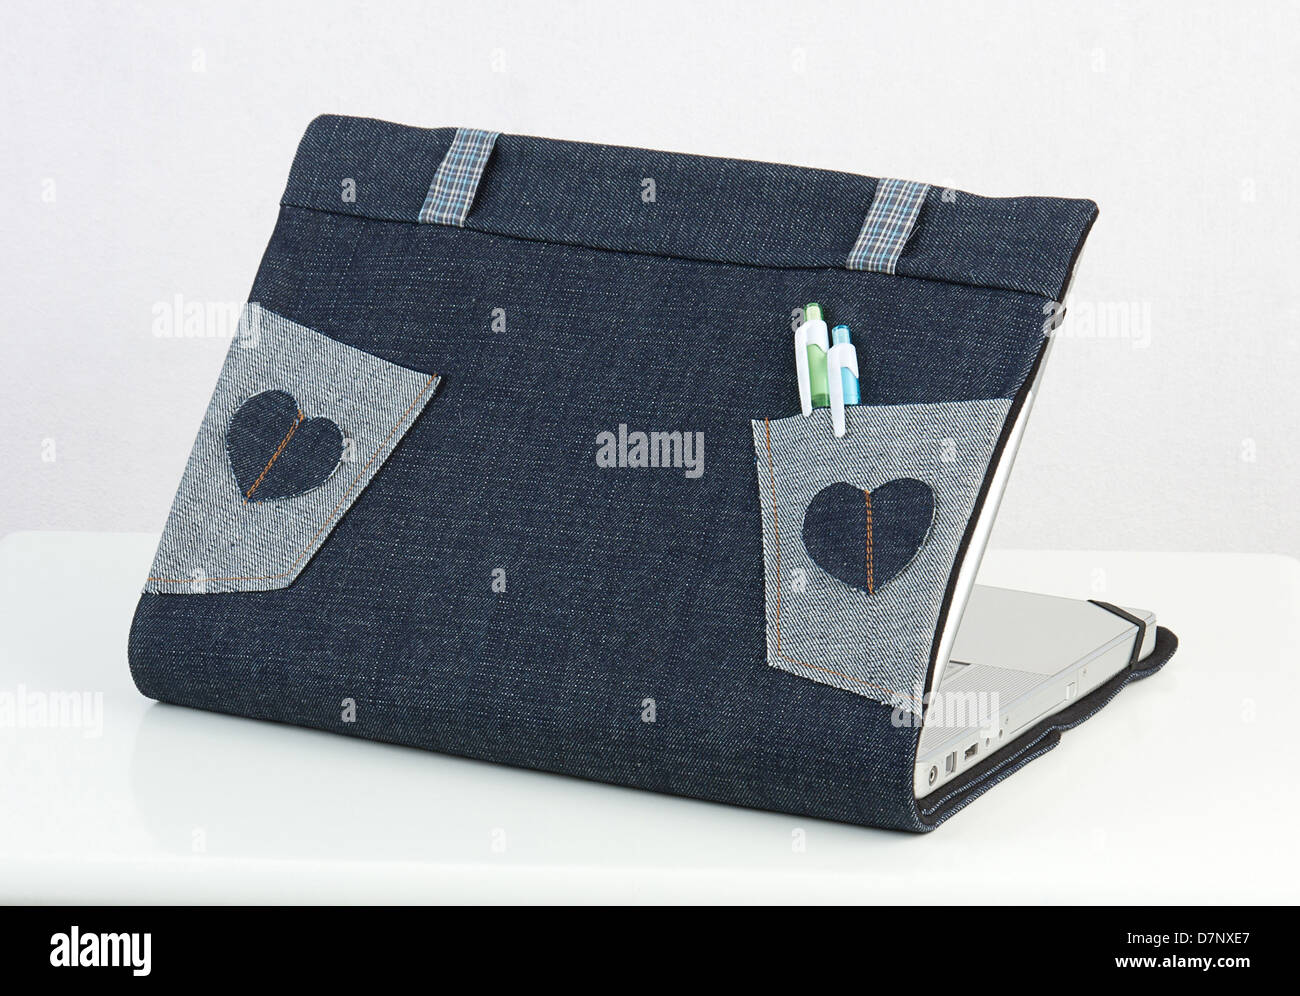 Coffre habillage en tissu pour protéger votre ordinateur portable des  rayures ou sale Photo Stock - Alamy